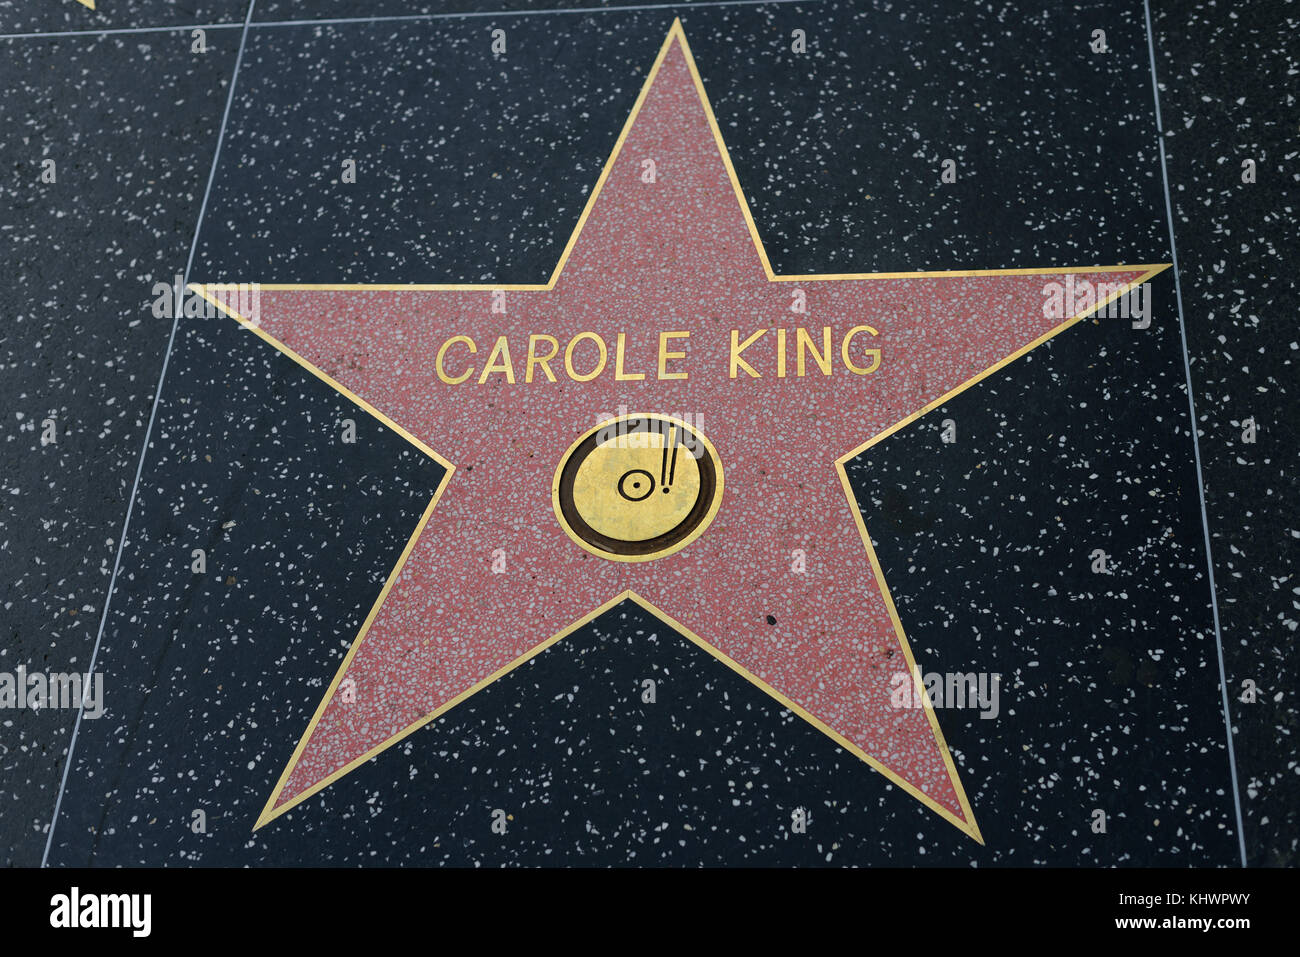 HOLLYWOOD, CA - DEZEMBER 06: Carole King Star auf dem Hollywood Walk of Fame in Hollywood, Kalifornien am 6. Dezember 2016. Stockfoto